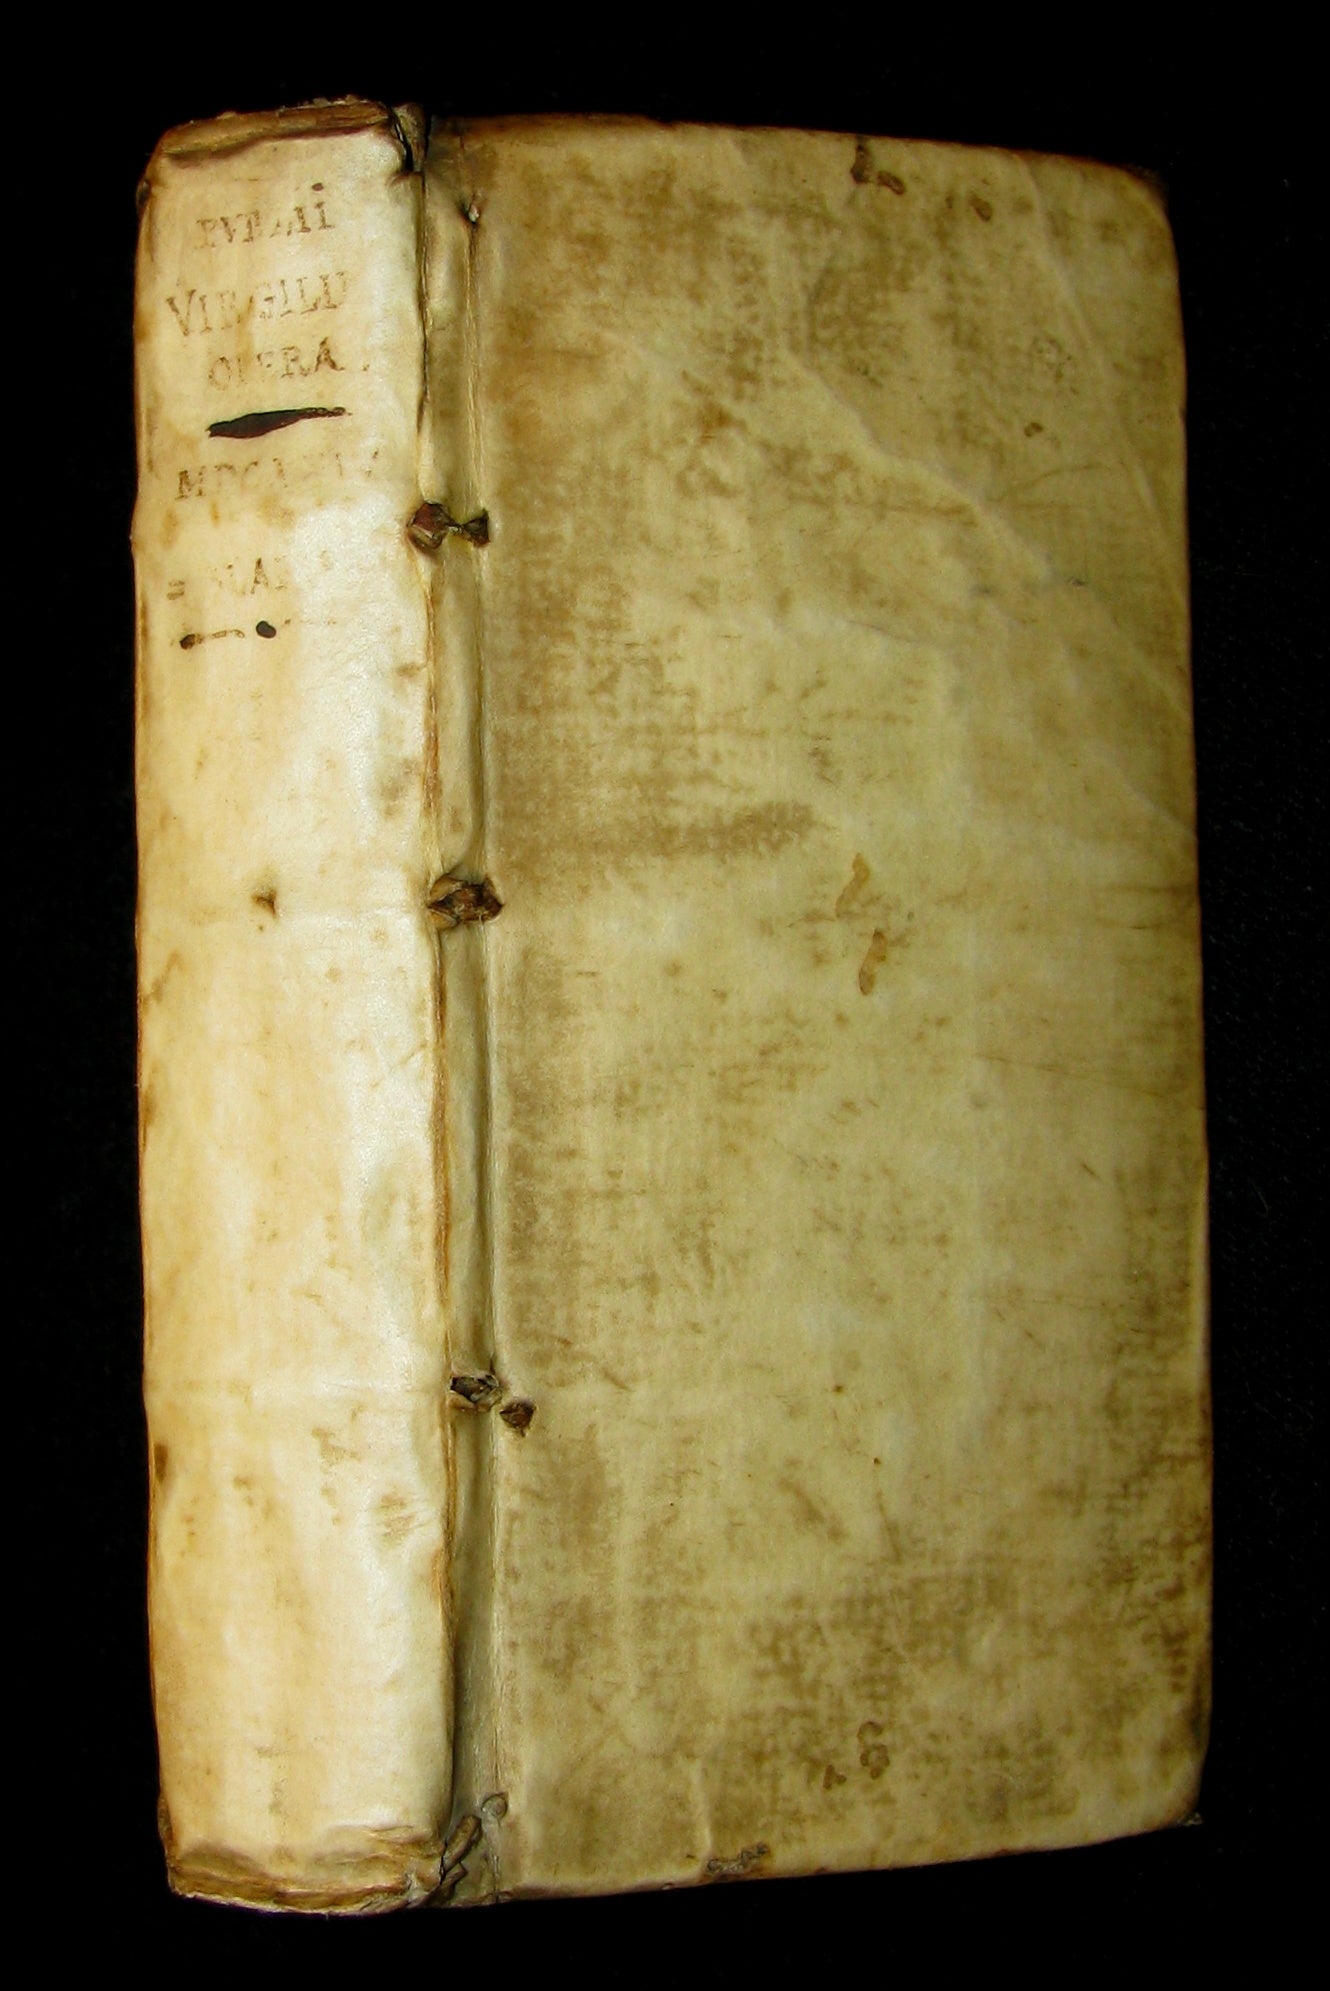 1624 Scarce Latin vellum Book - VIRGIL Works - Pub. Virgilii Maronis Opera (Aeneid, Georgics, etc)